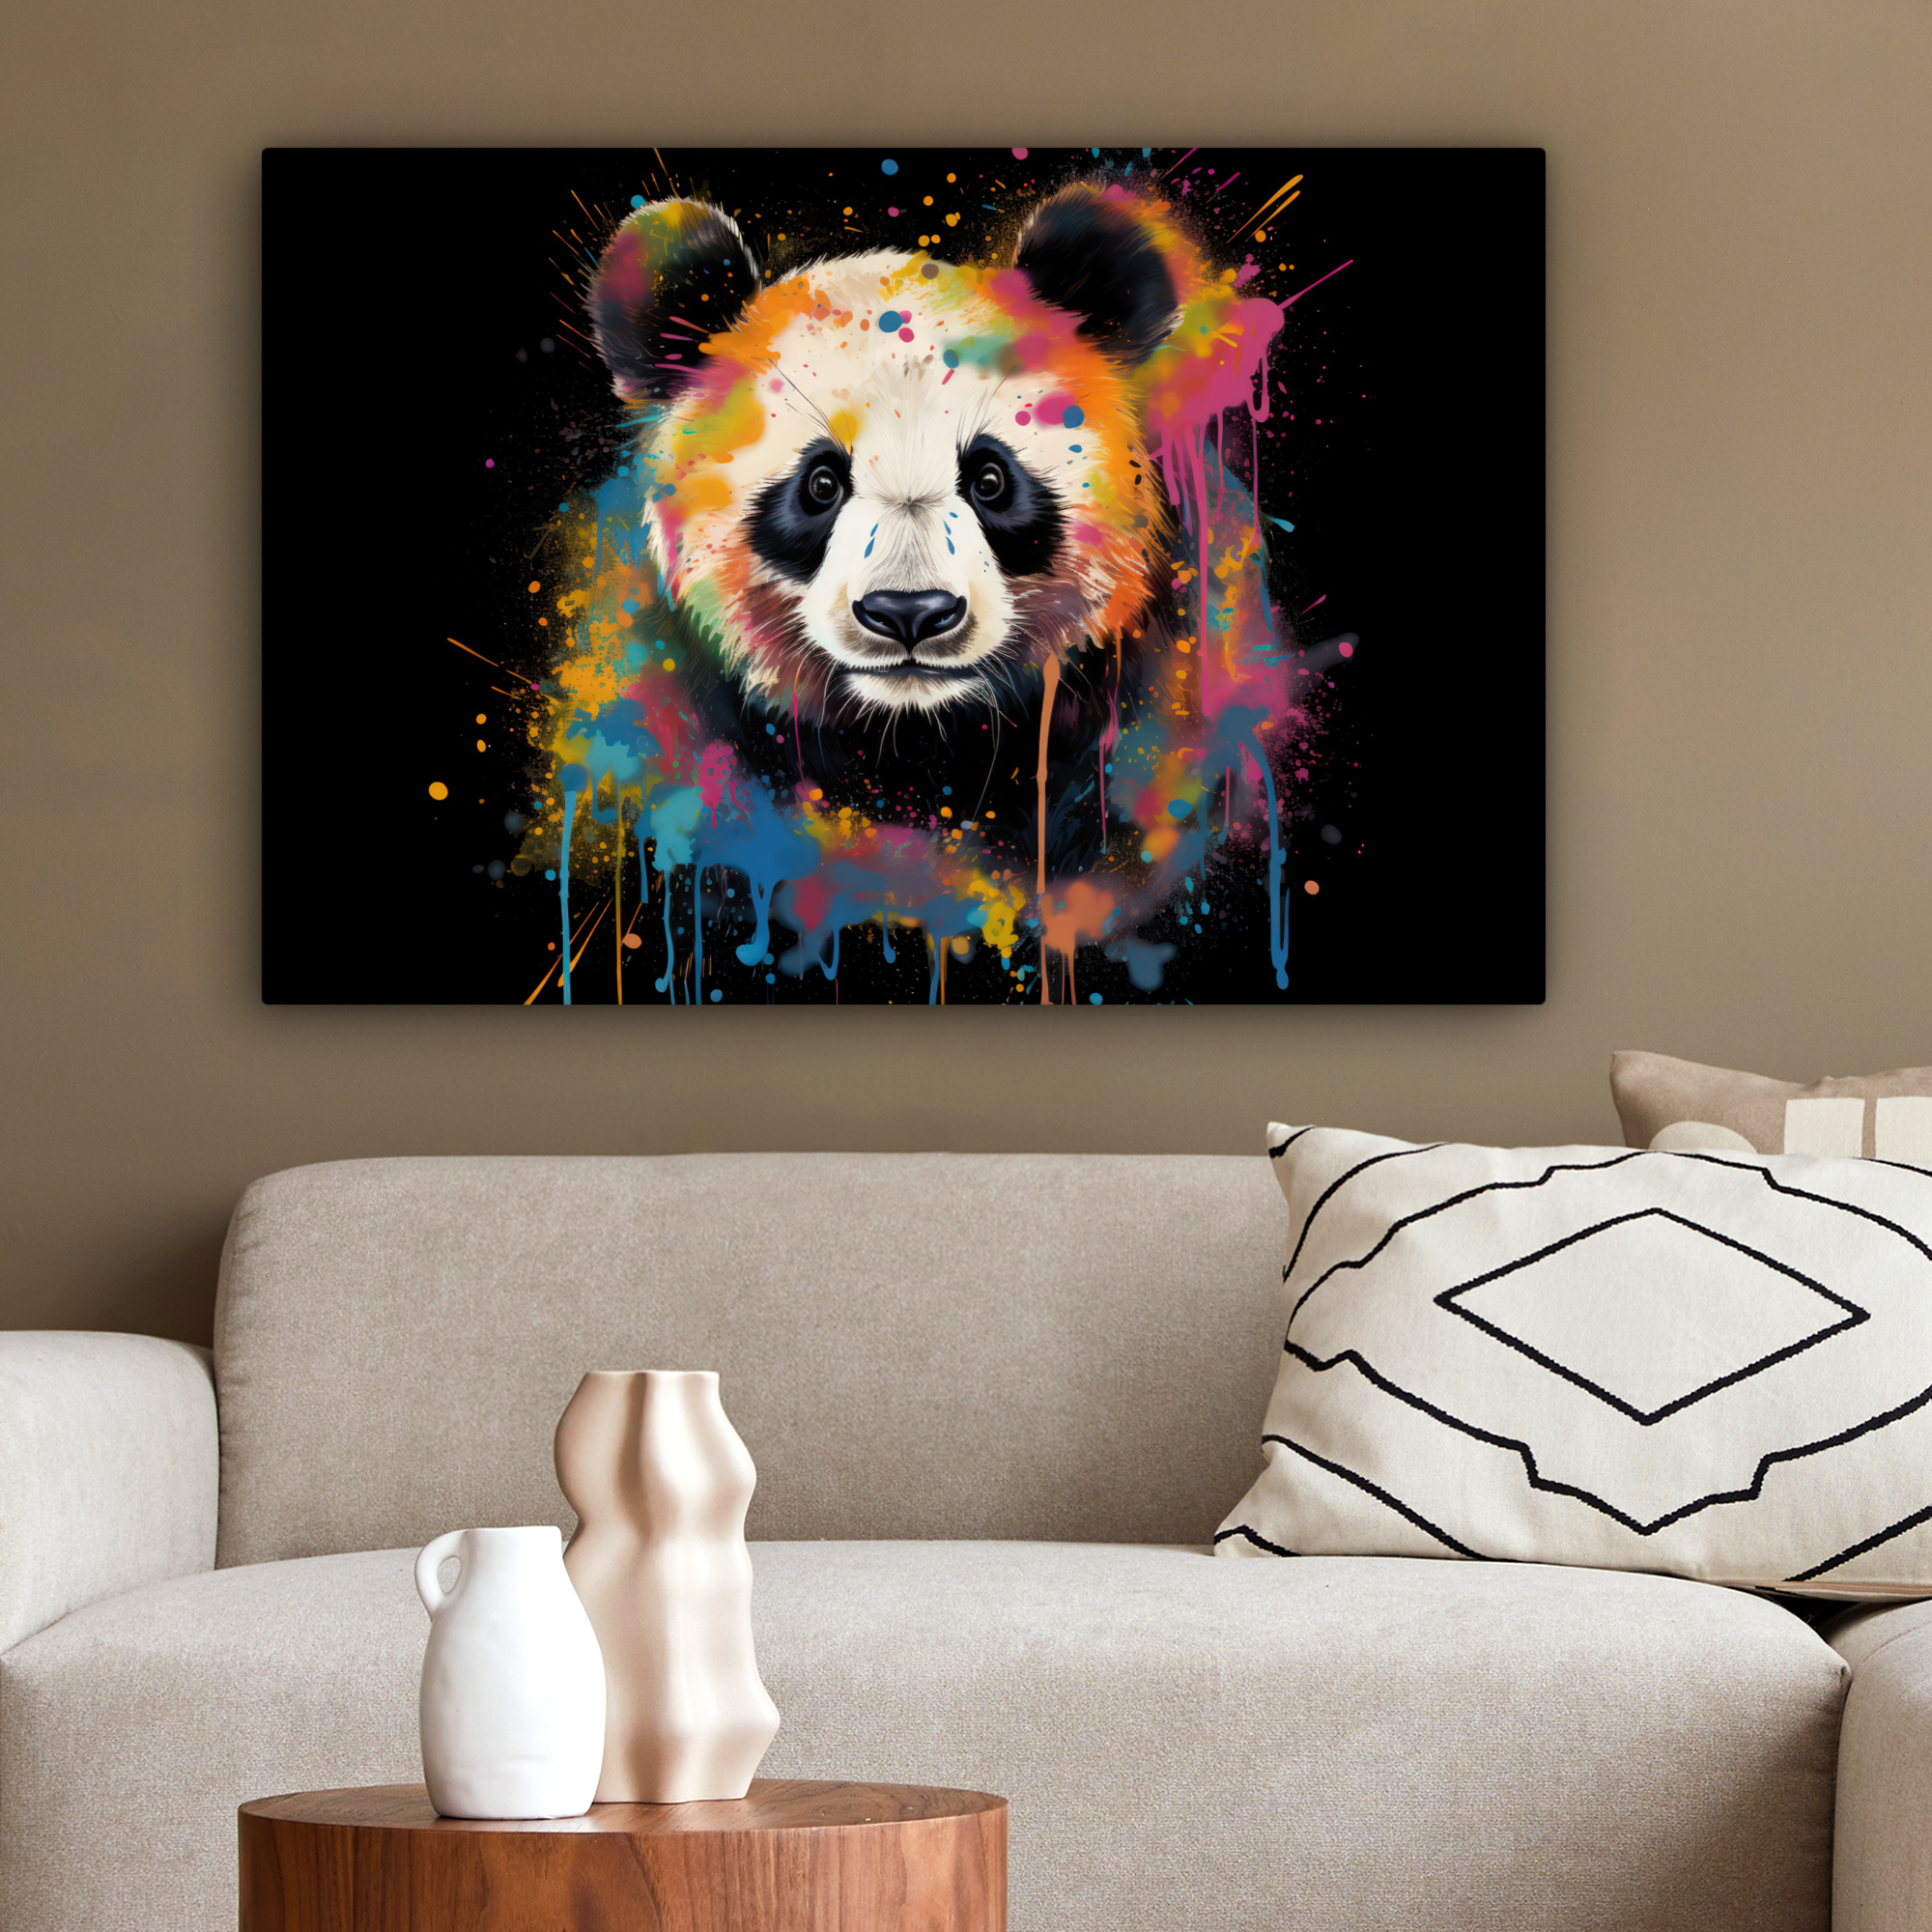 Tableau sur toile - Panda - Graffiti - Animaux - Noir - Couleurs-2